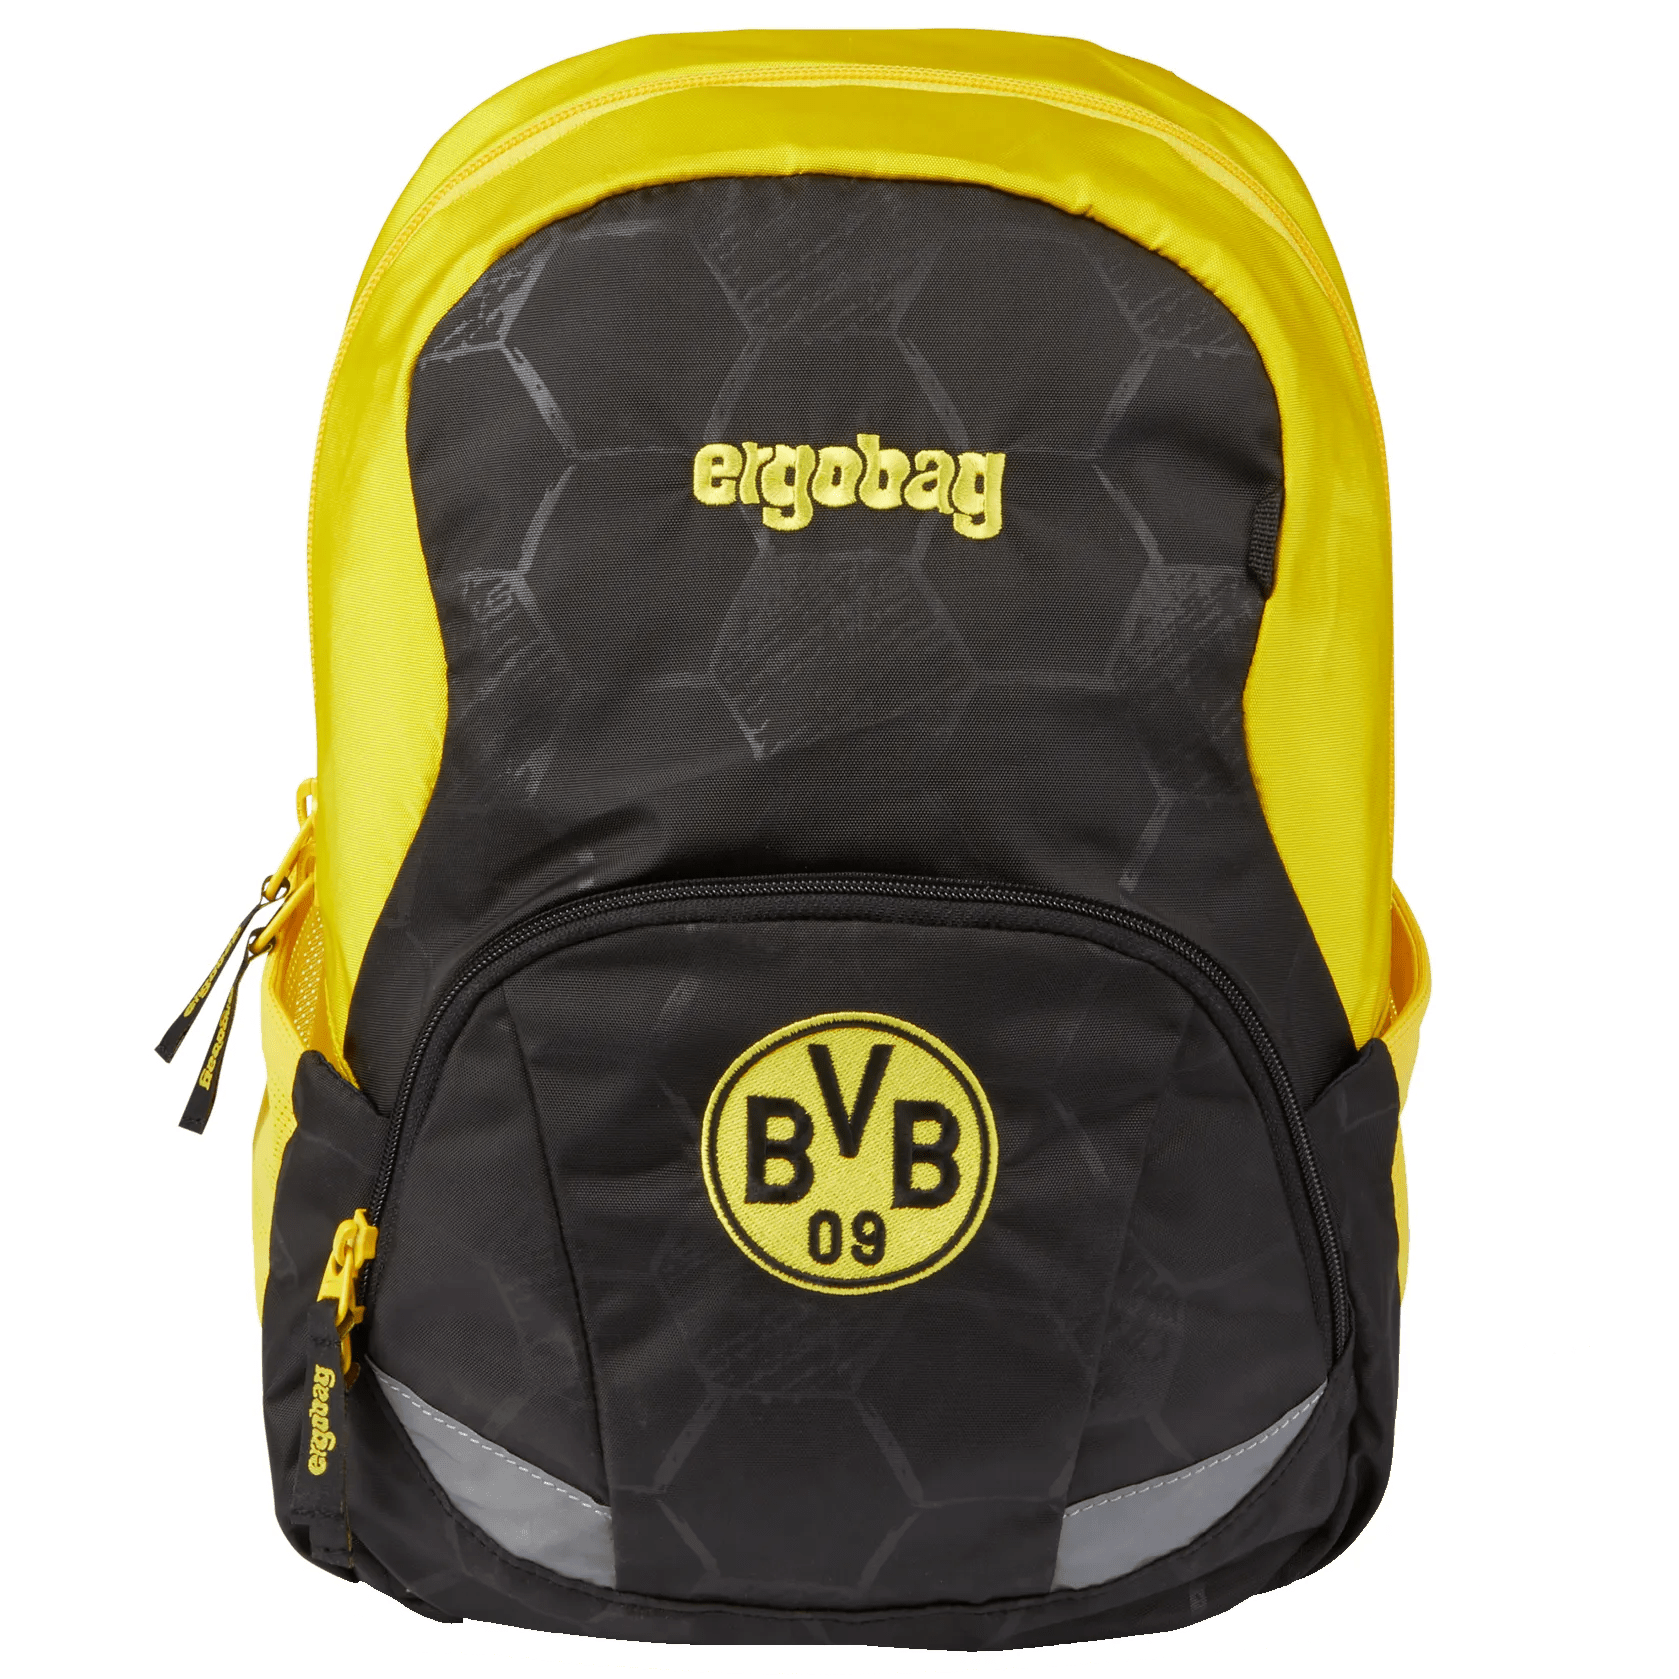 Ergobag Ease Grand sac à dos enfant 35 cm - Borussia Dortmund